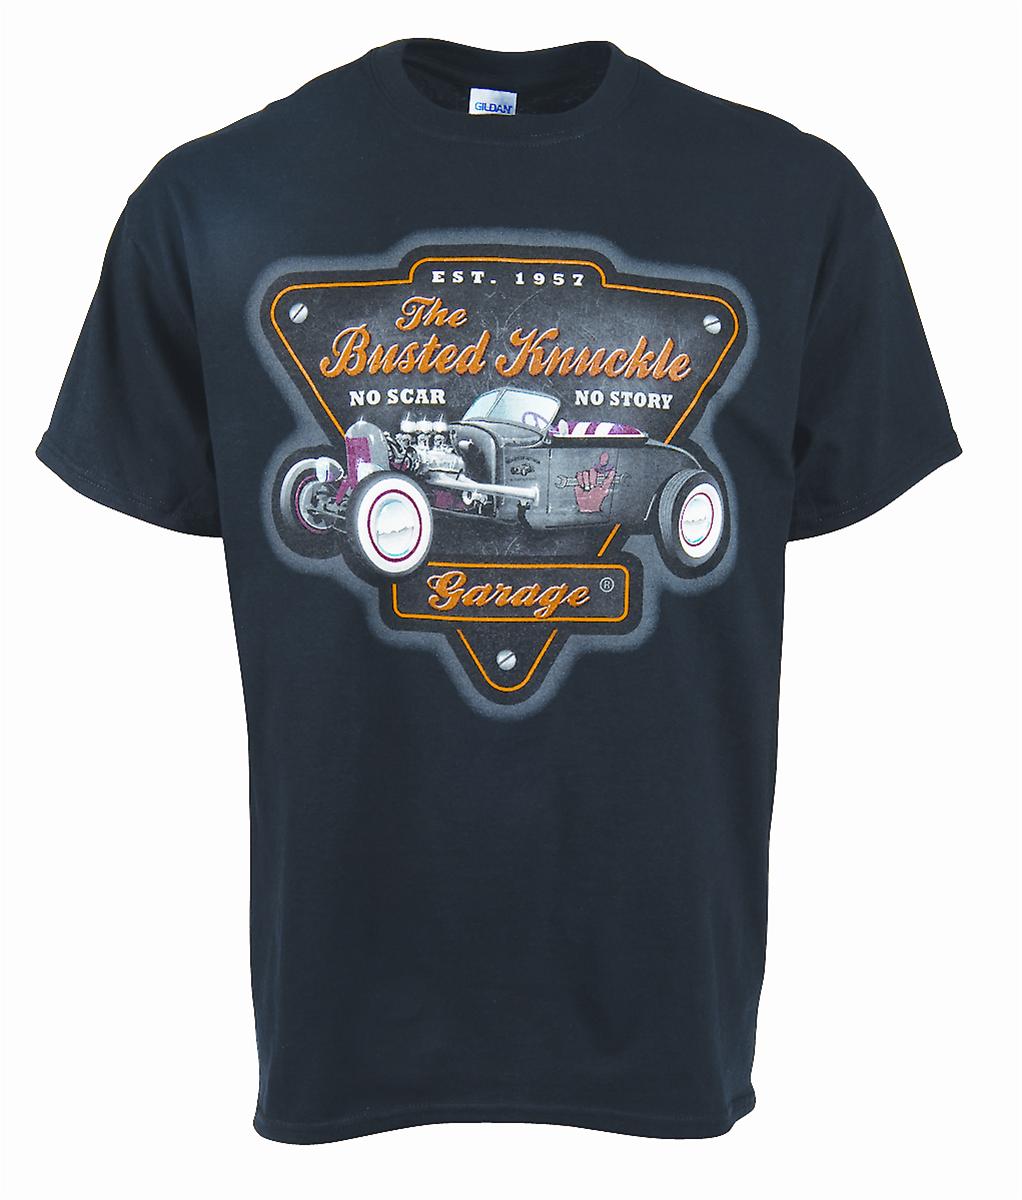 Busted Knuckle Garage T-Shirt TRDST-XL | eBay